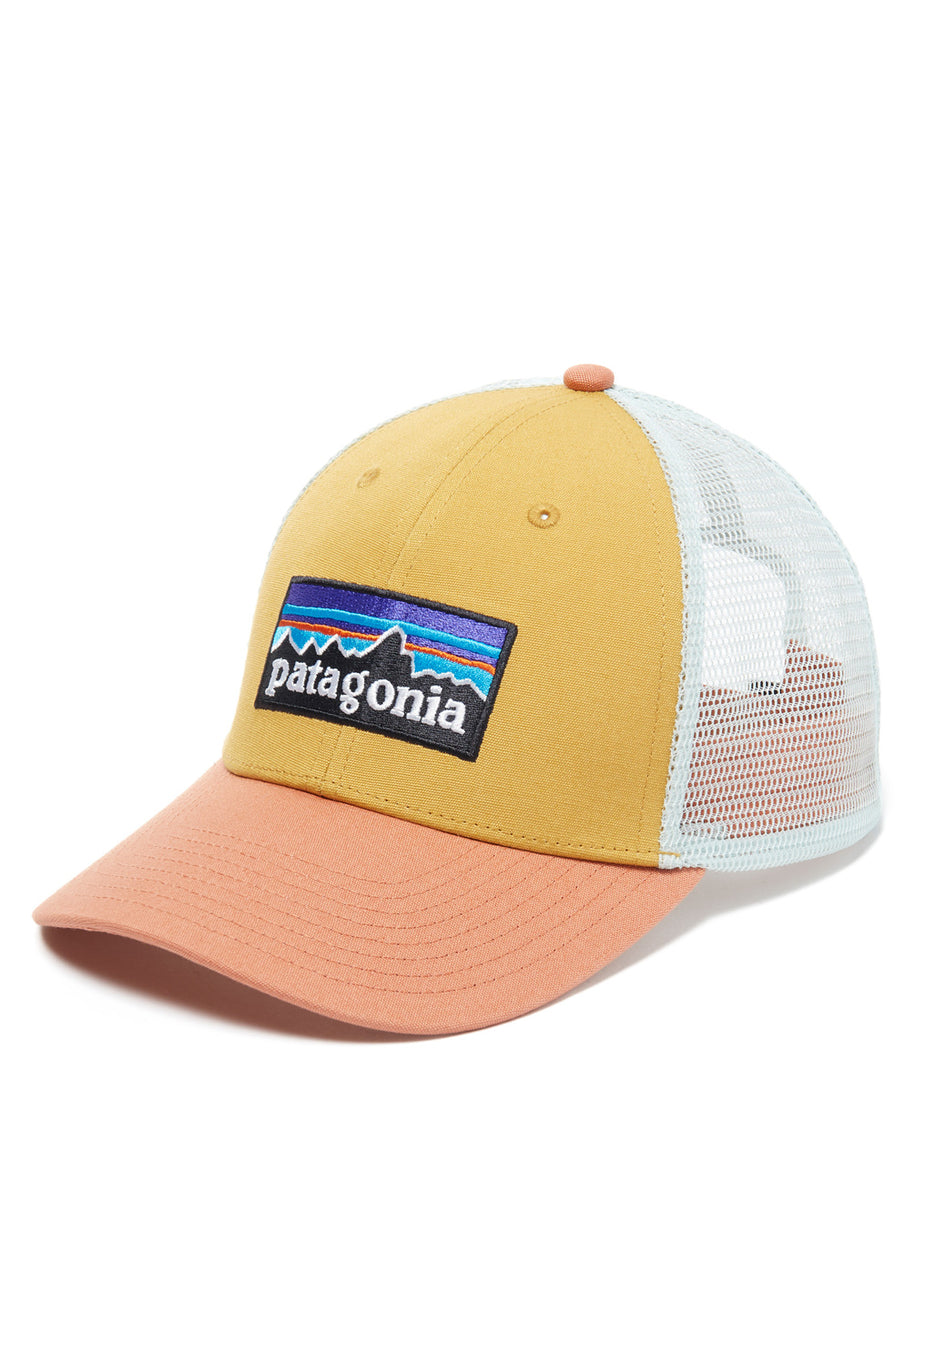 Patagonia P-6 Logo LoPro Trucker Hat - Pufferfish Gold